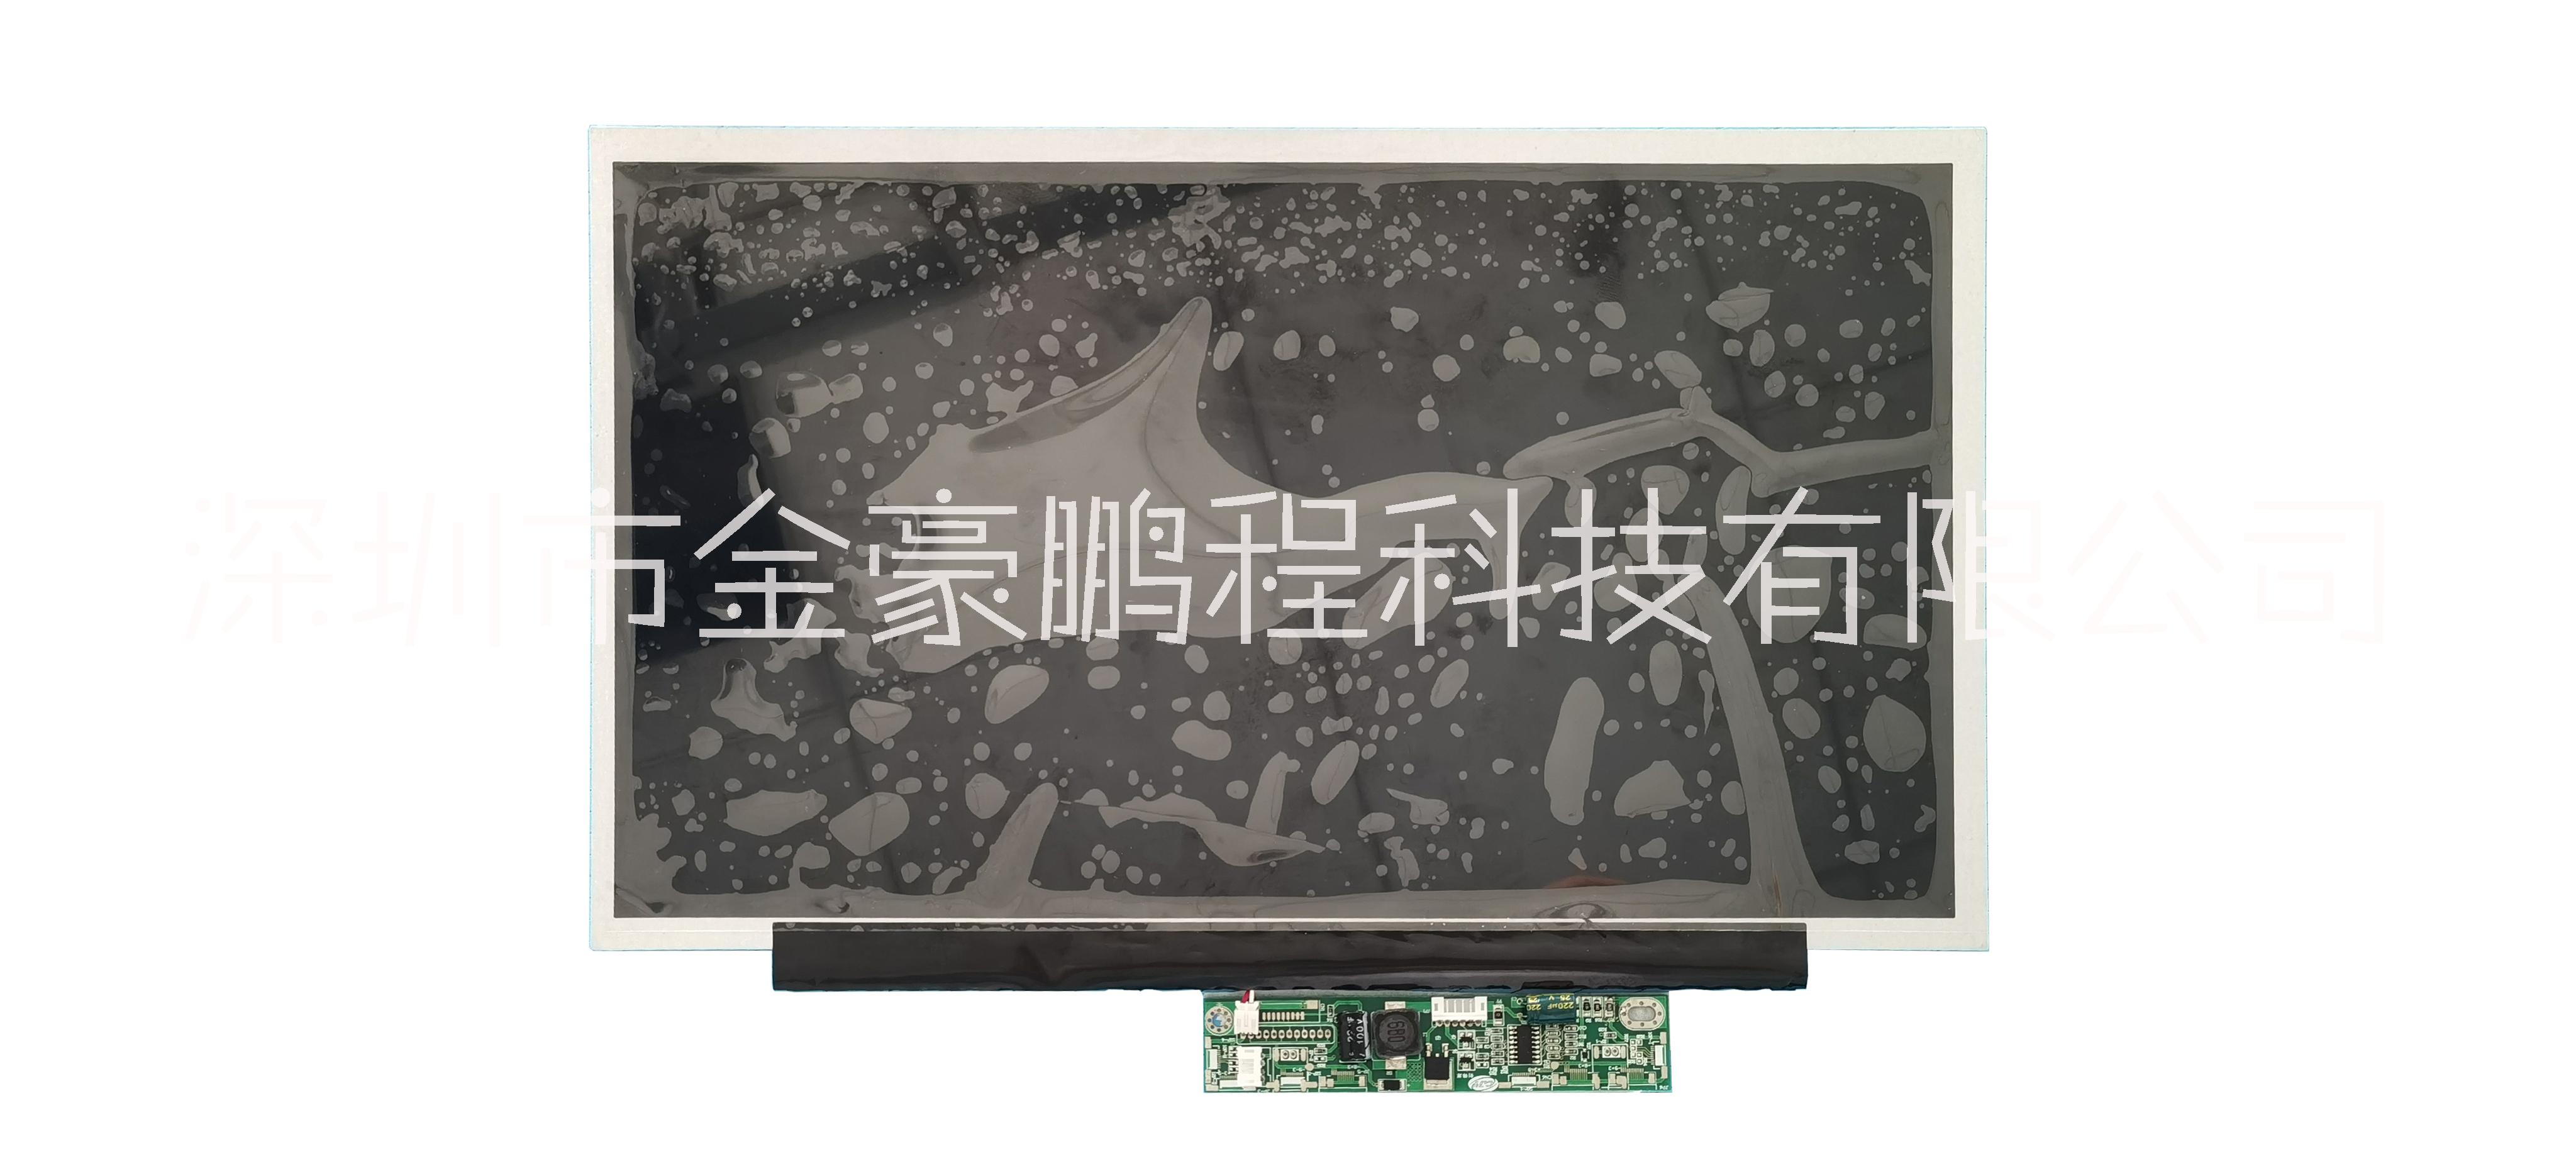 15.6寸液晶显示模组 XP156A500-E05 液晶显示屏